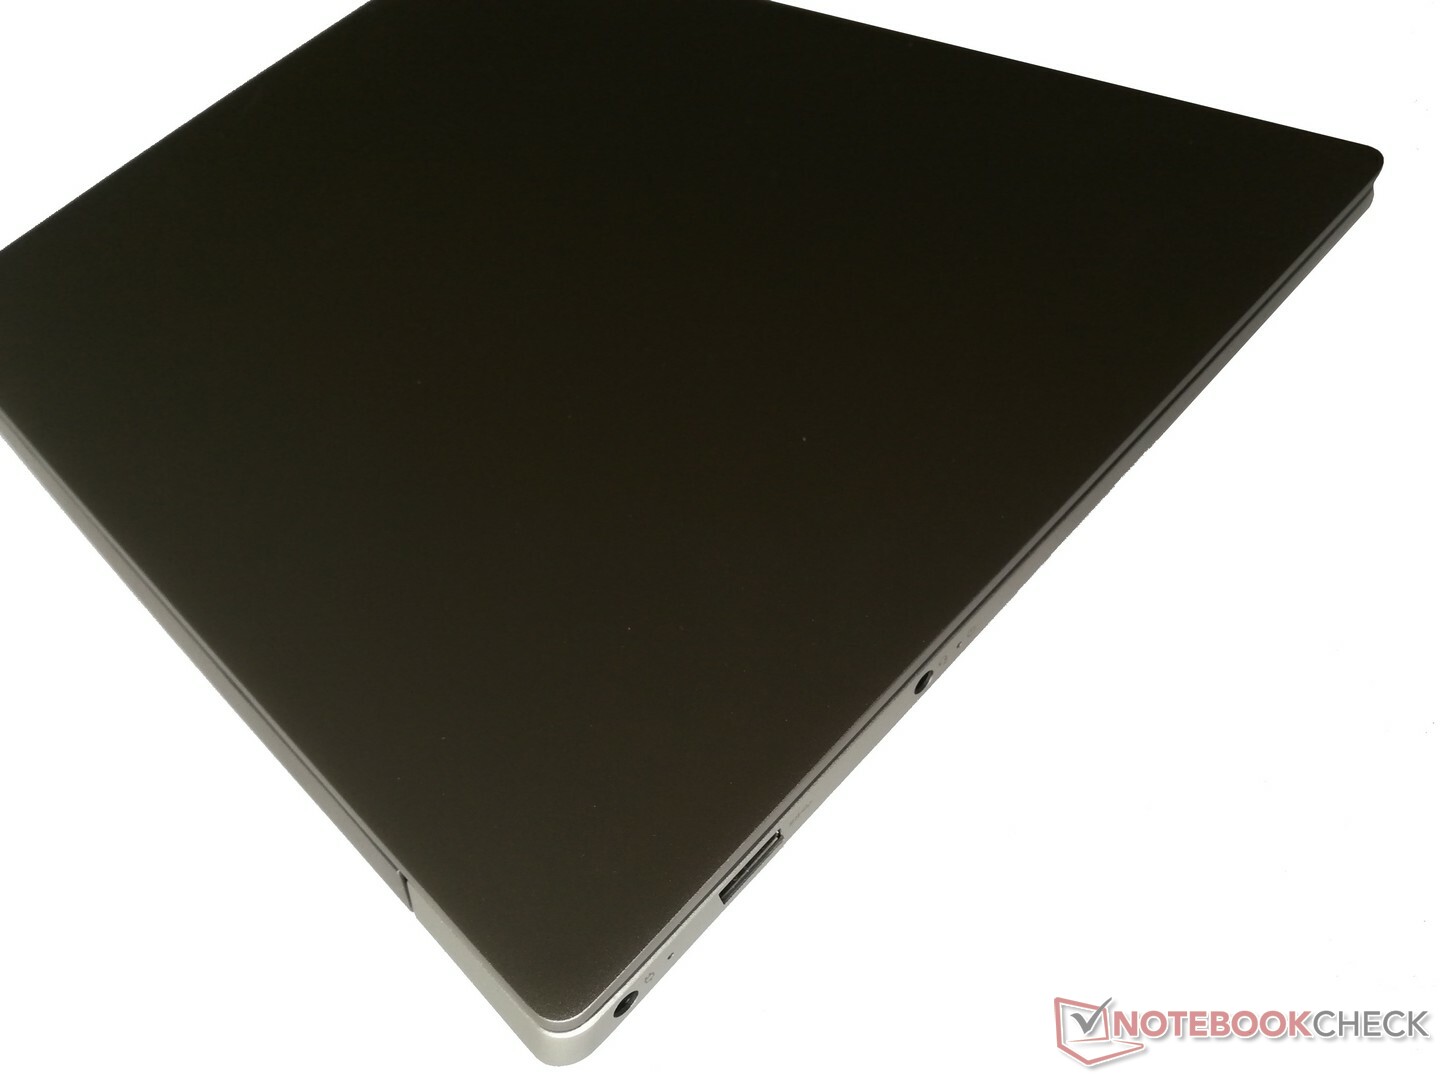 Lenovo IdeaPad S530 (i5-8265U, UHD620) Subnotebook Review 